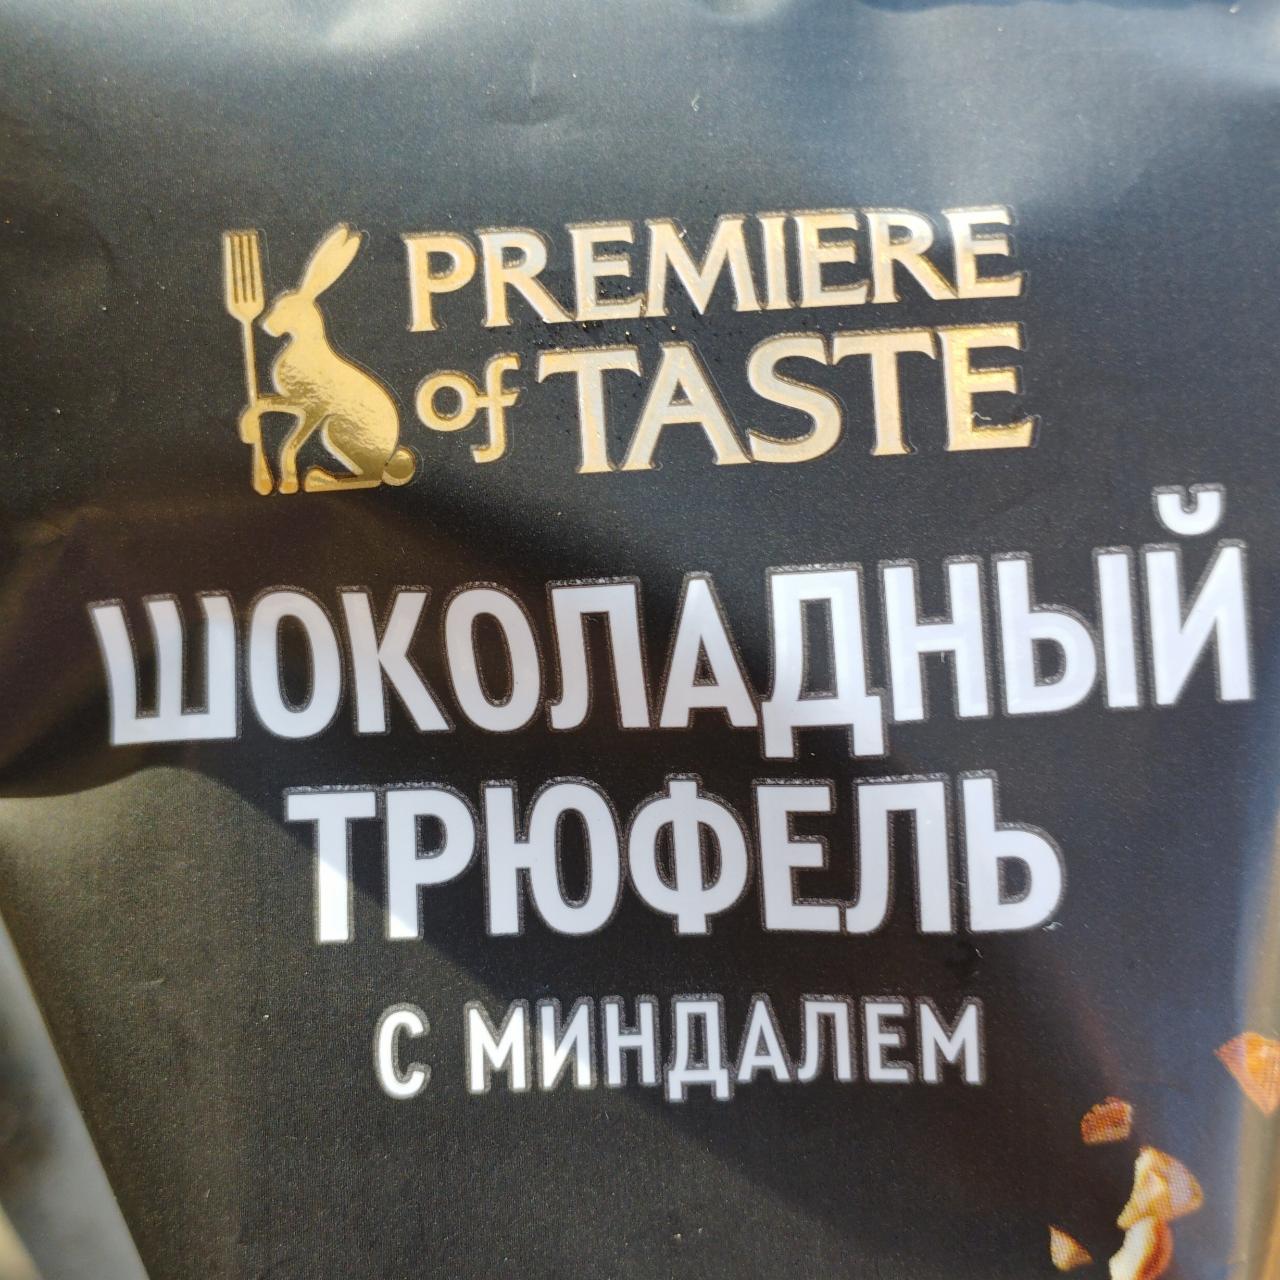 Фото - Шоколадный трюфель с миндалем Premiere of taste